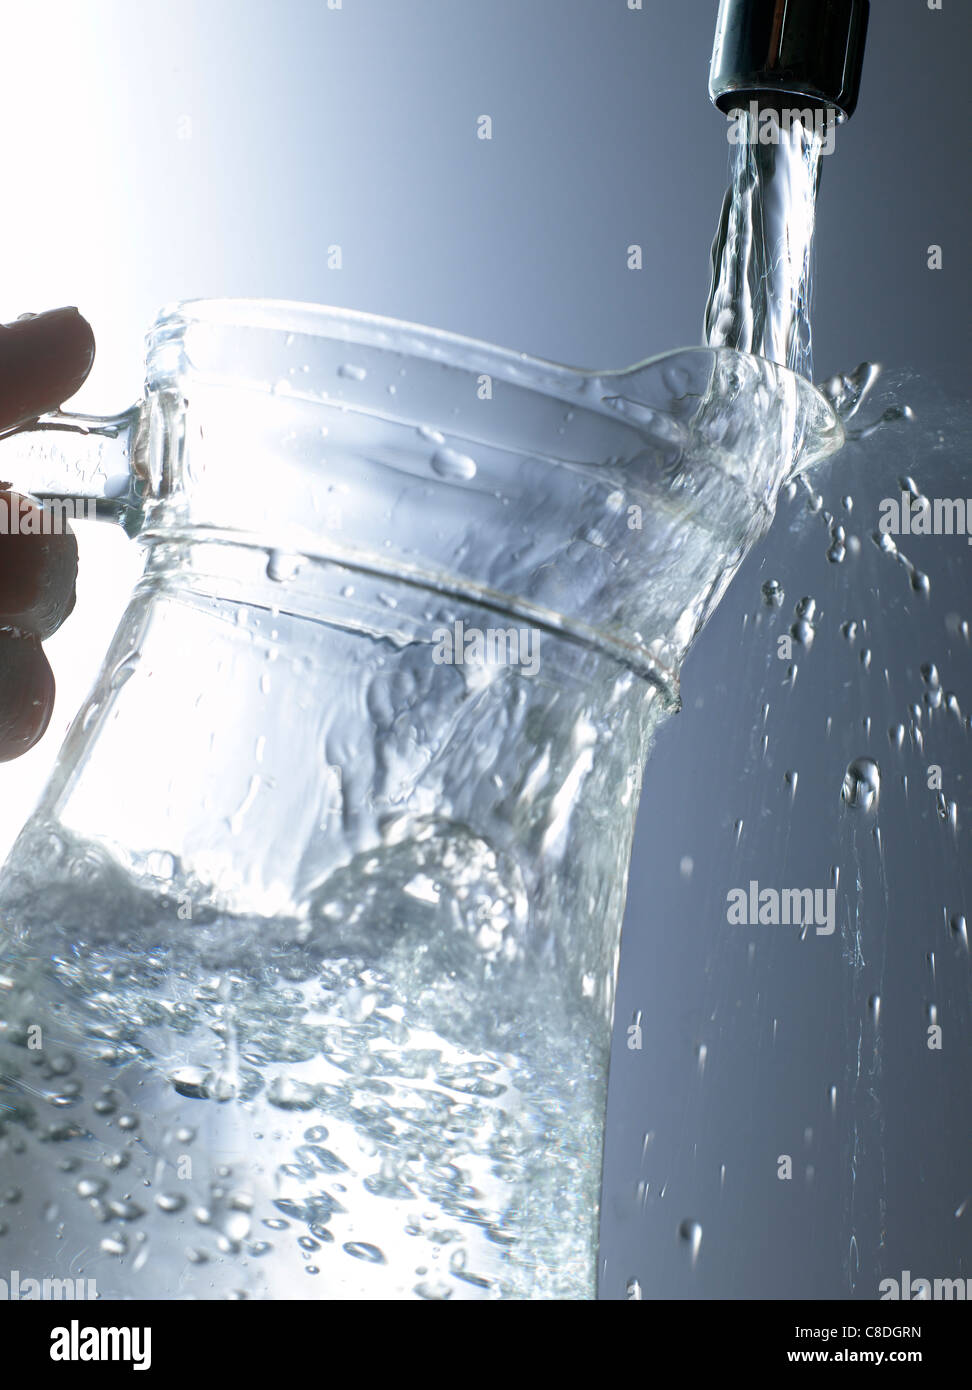 Remplir une carafe d'eau sous le robinet Photo Stock - Alamy